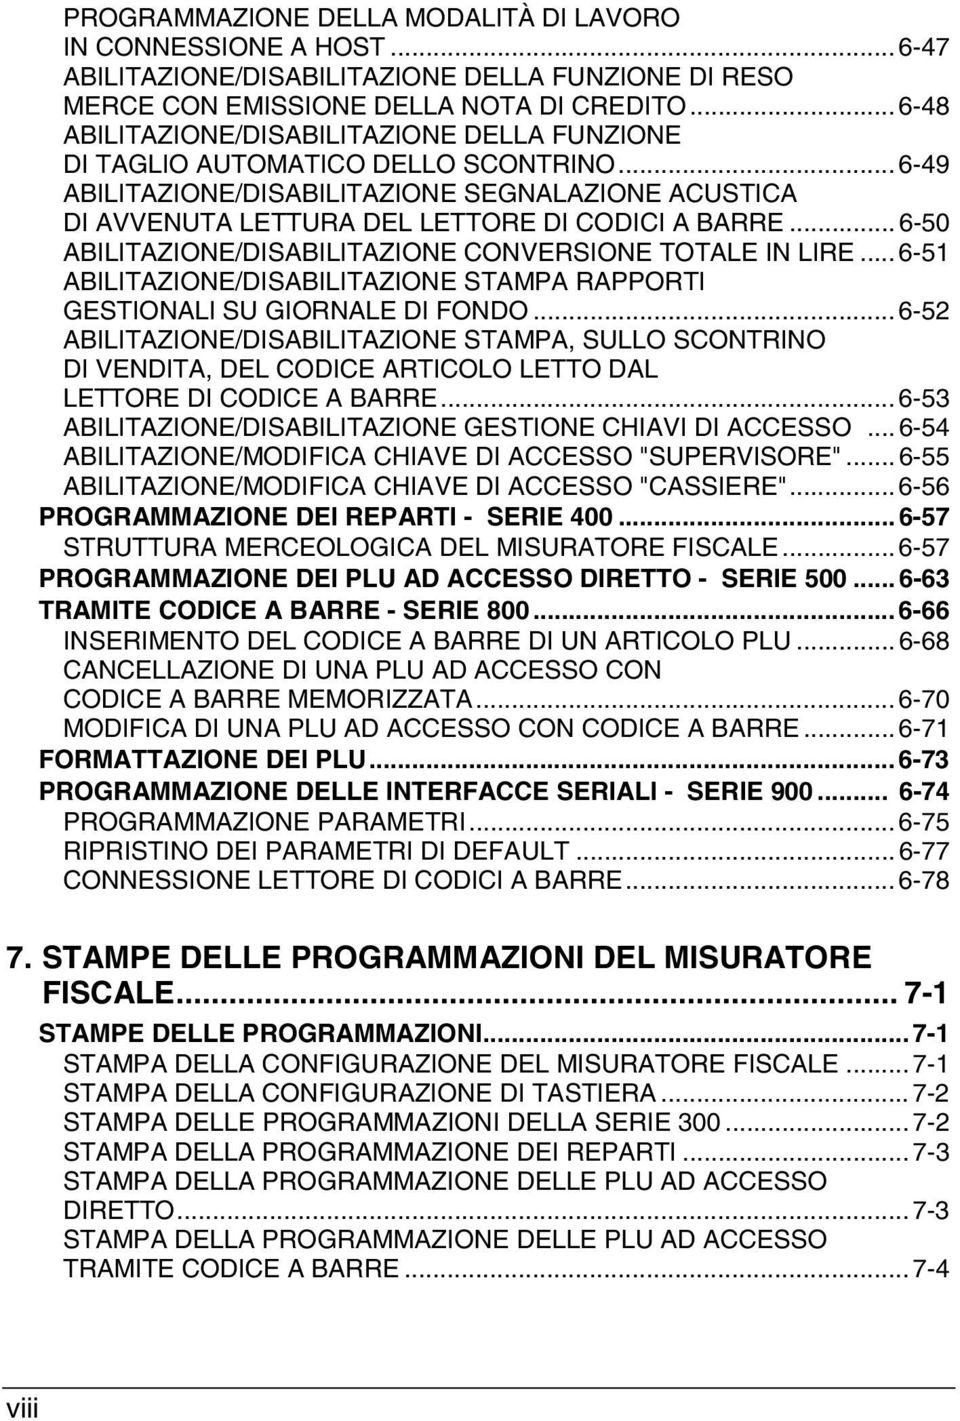 .. 6-50 ABILITAZIONE/DISABILITAZIONE CONVERSIONE TOTALE IN LIRE... 6-51 ABILITAZIONE/DISABILITAZIONE STAMPA RAPPORTI GESTIONALI SU GIORNALE DI FONDO.